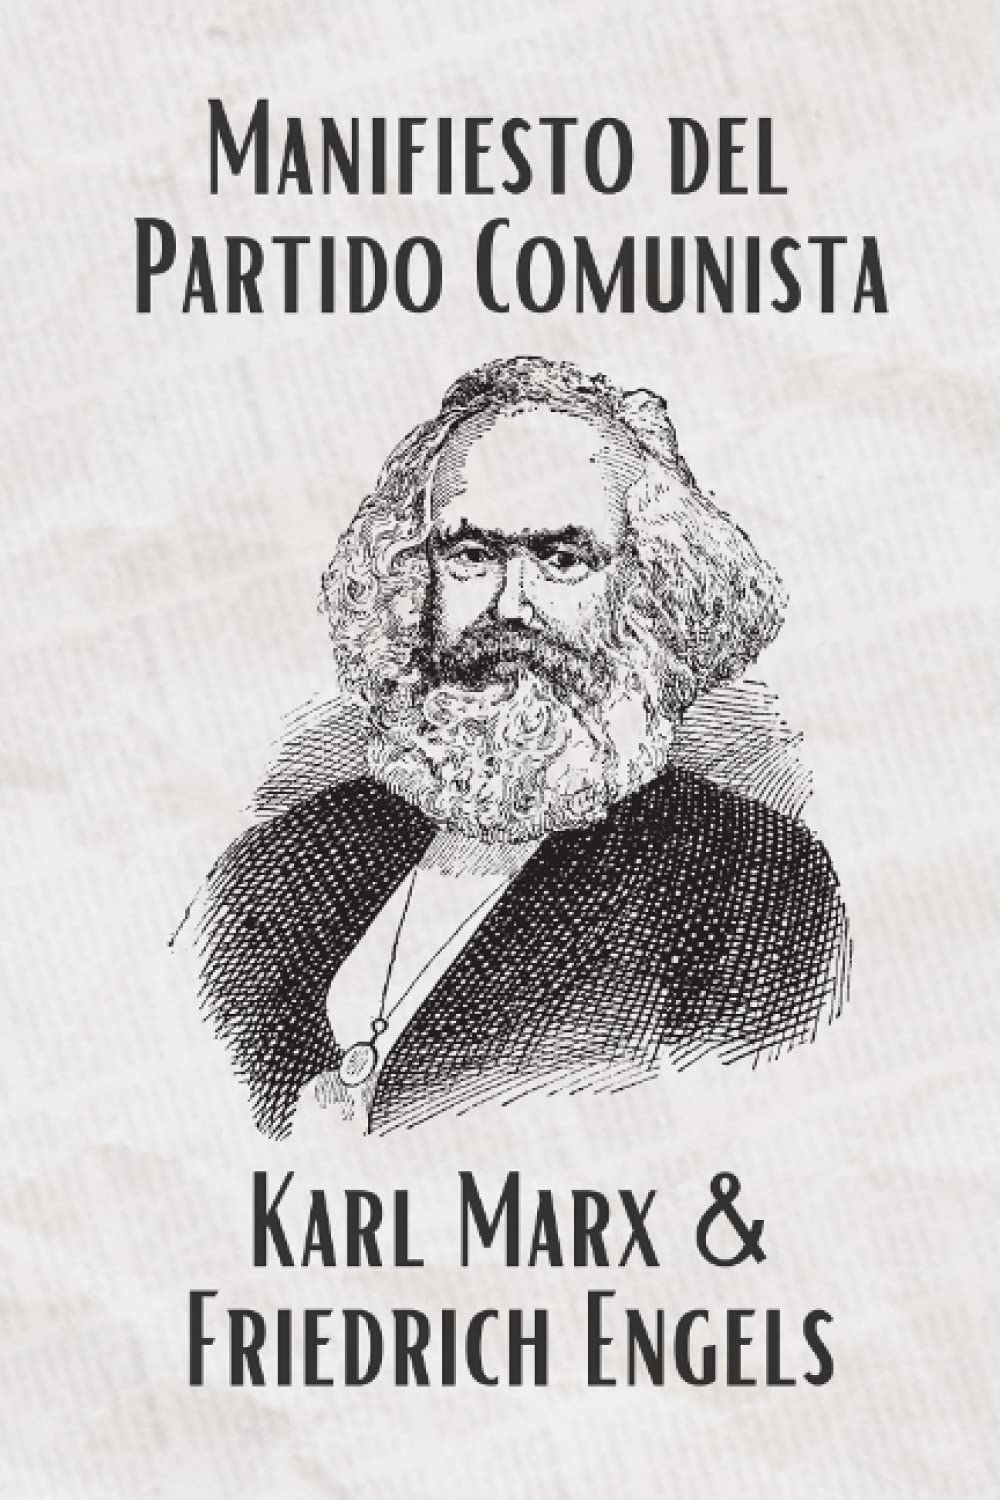 El Manifiesto del Partido Comunista (Spanish) (Translated): La Traducción Actualizada (Spanish Edition)